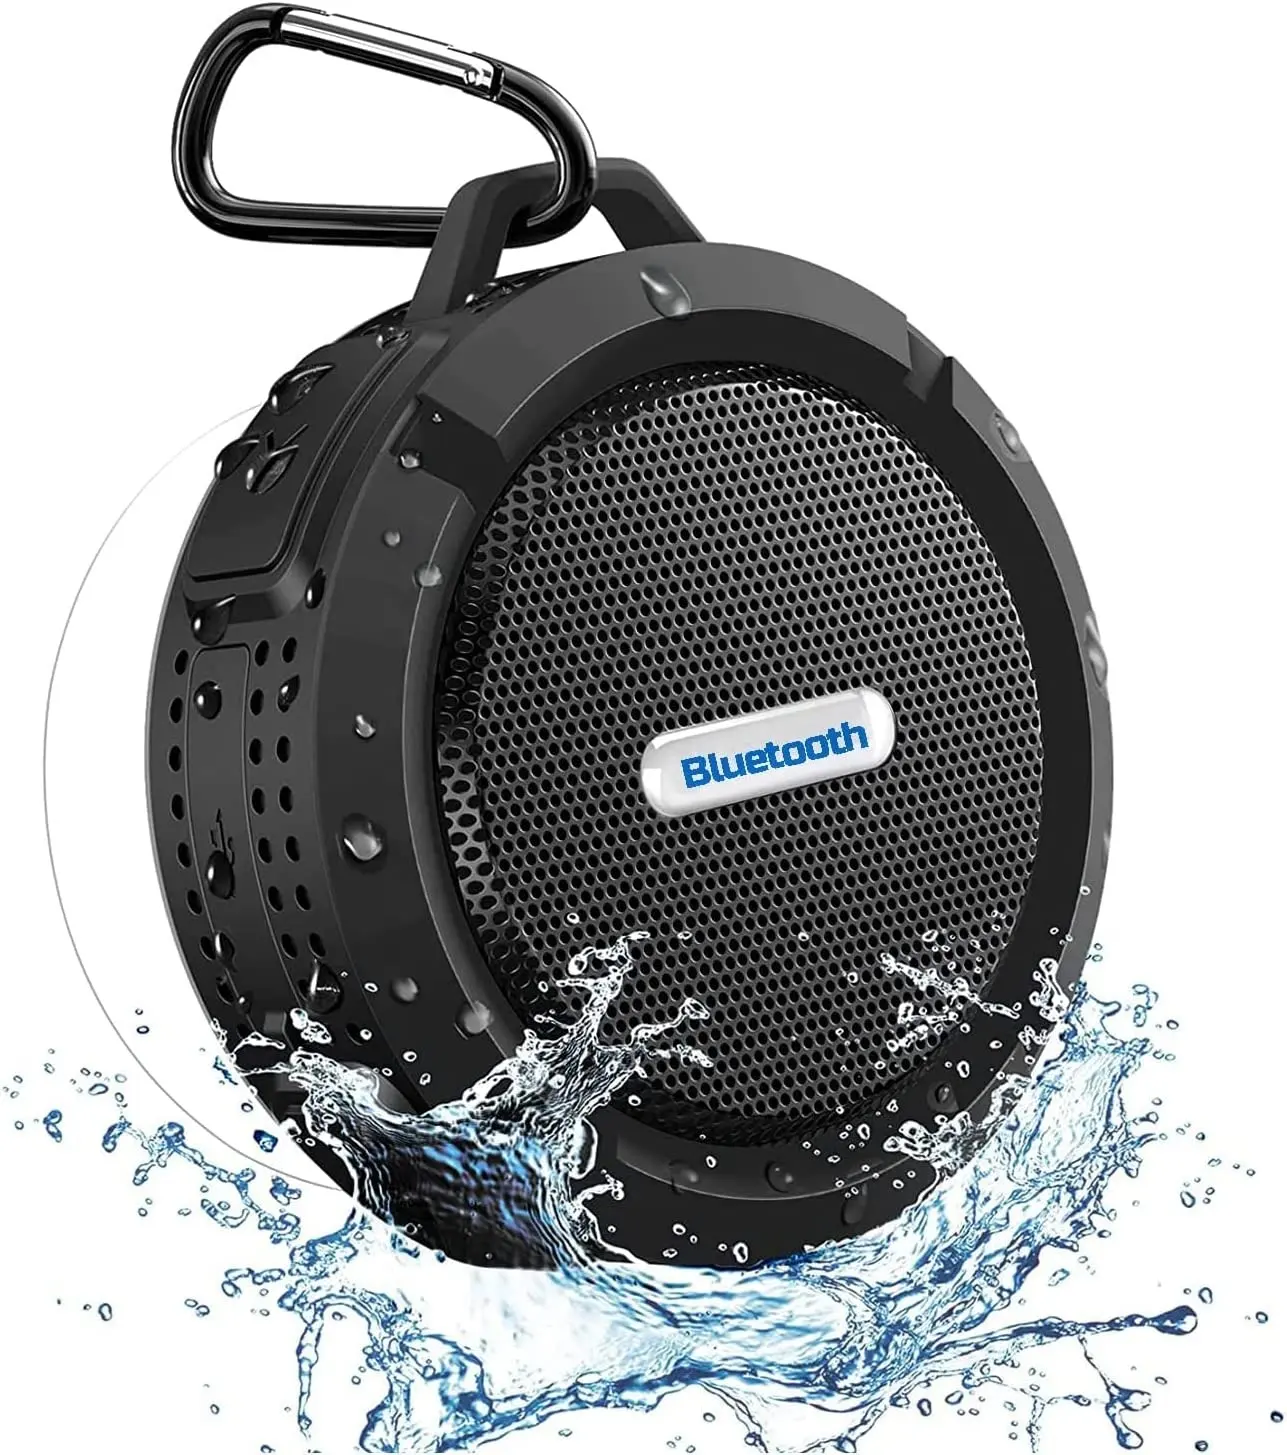 Mini Douche Speakers, Ip65 Waterdichte Bluetooth Draagbare Speakers En Echte Draadloze Stereo En Dsp Technologie, 6 Uur Afspelen